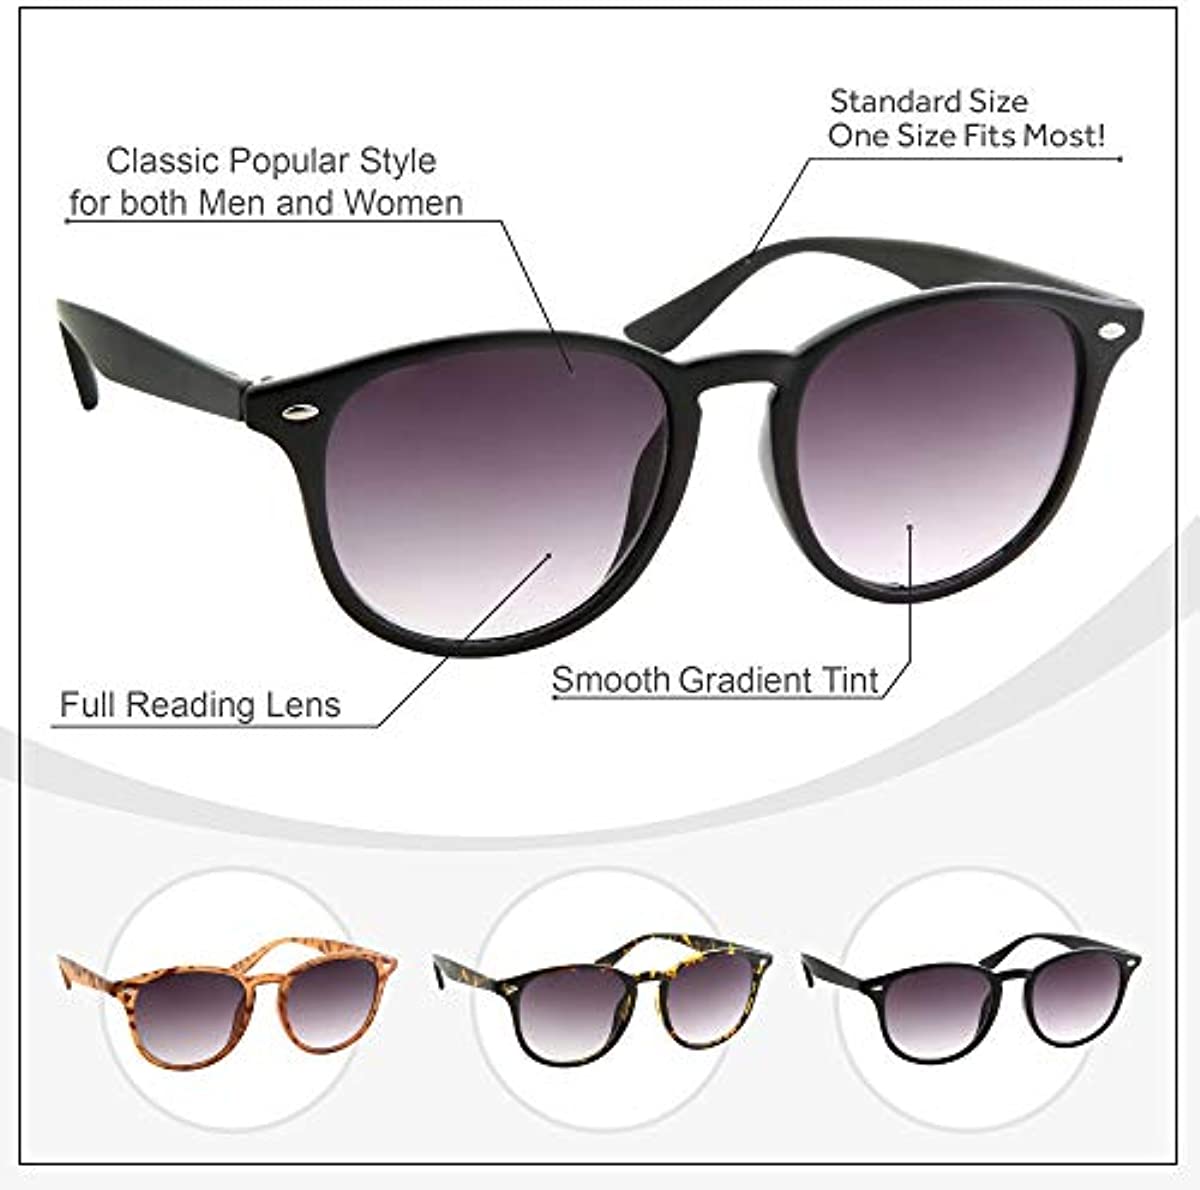 Full Lens Reading Sunglasses | Classic Outdoor Reader Glasses | Men and Women